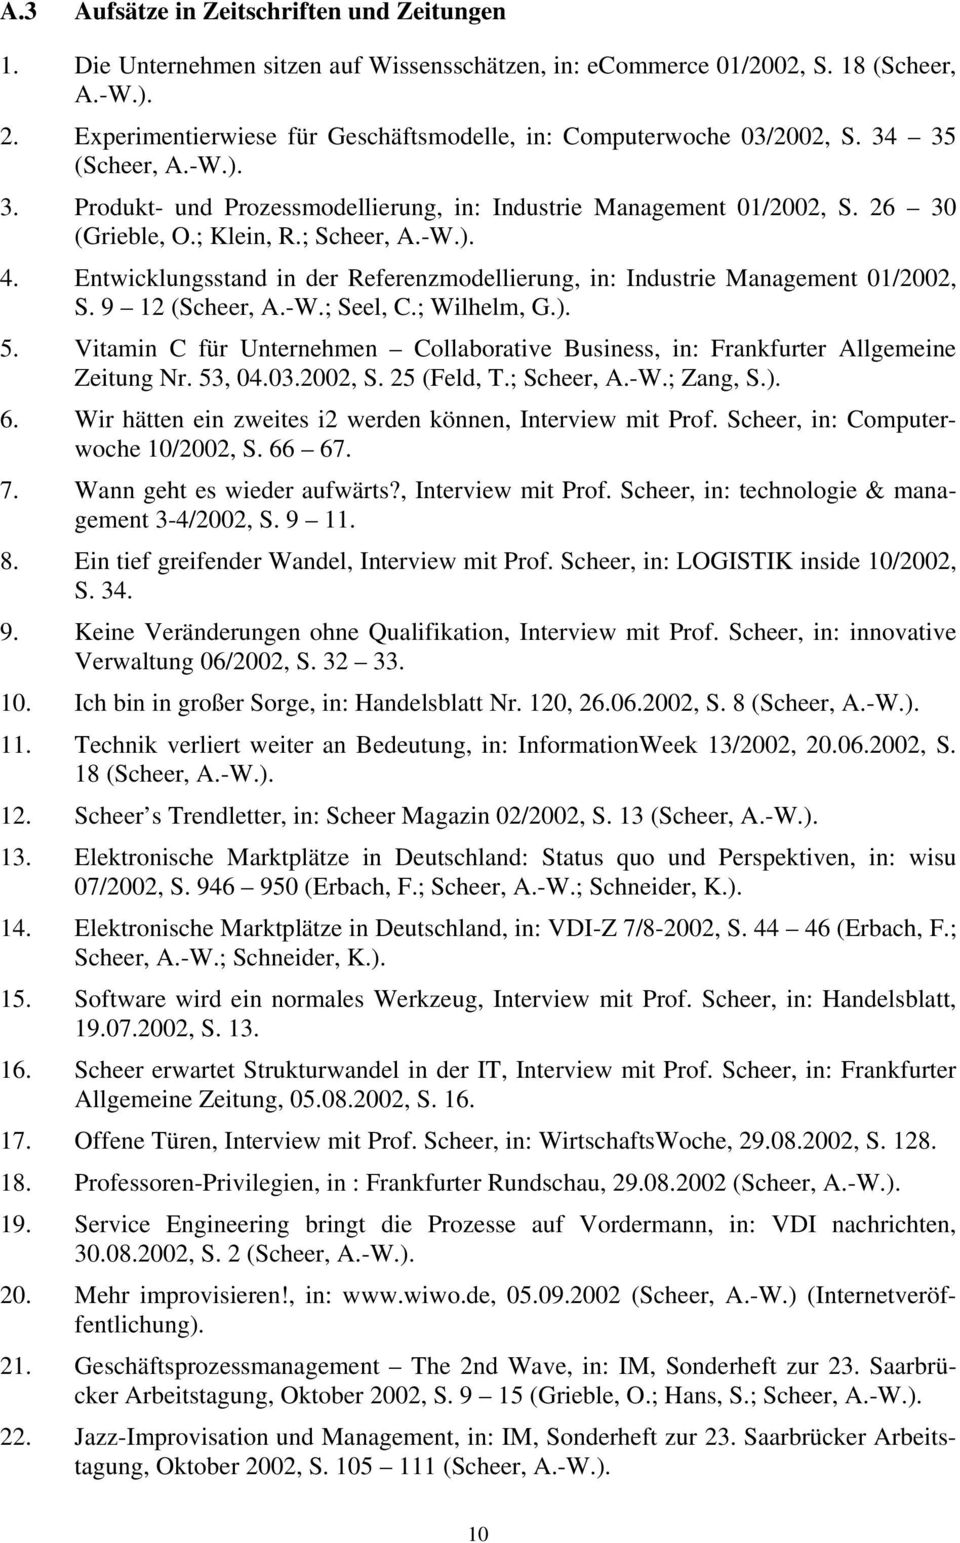 ; Scheer, A.-W.). 4. Entwicklungsstand in der Referenzmodellierung, in: Industrie Management 01/2002, S. 9 12 (Scheer, A.-W.; Seel, C.; Wilhelm, G.). 5.